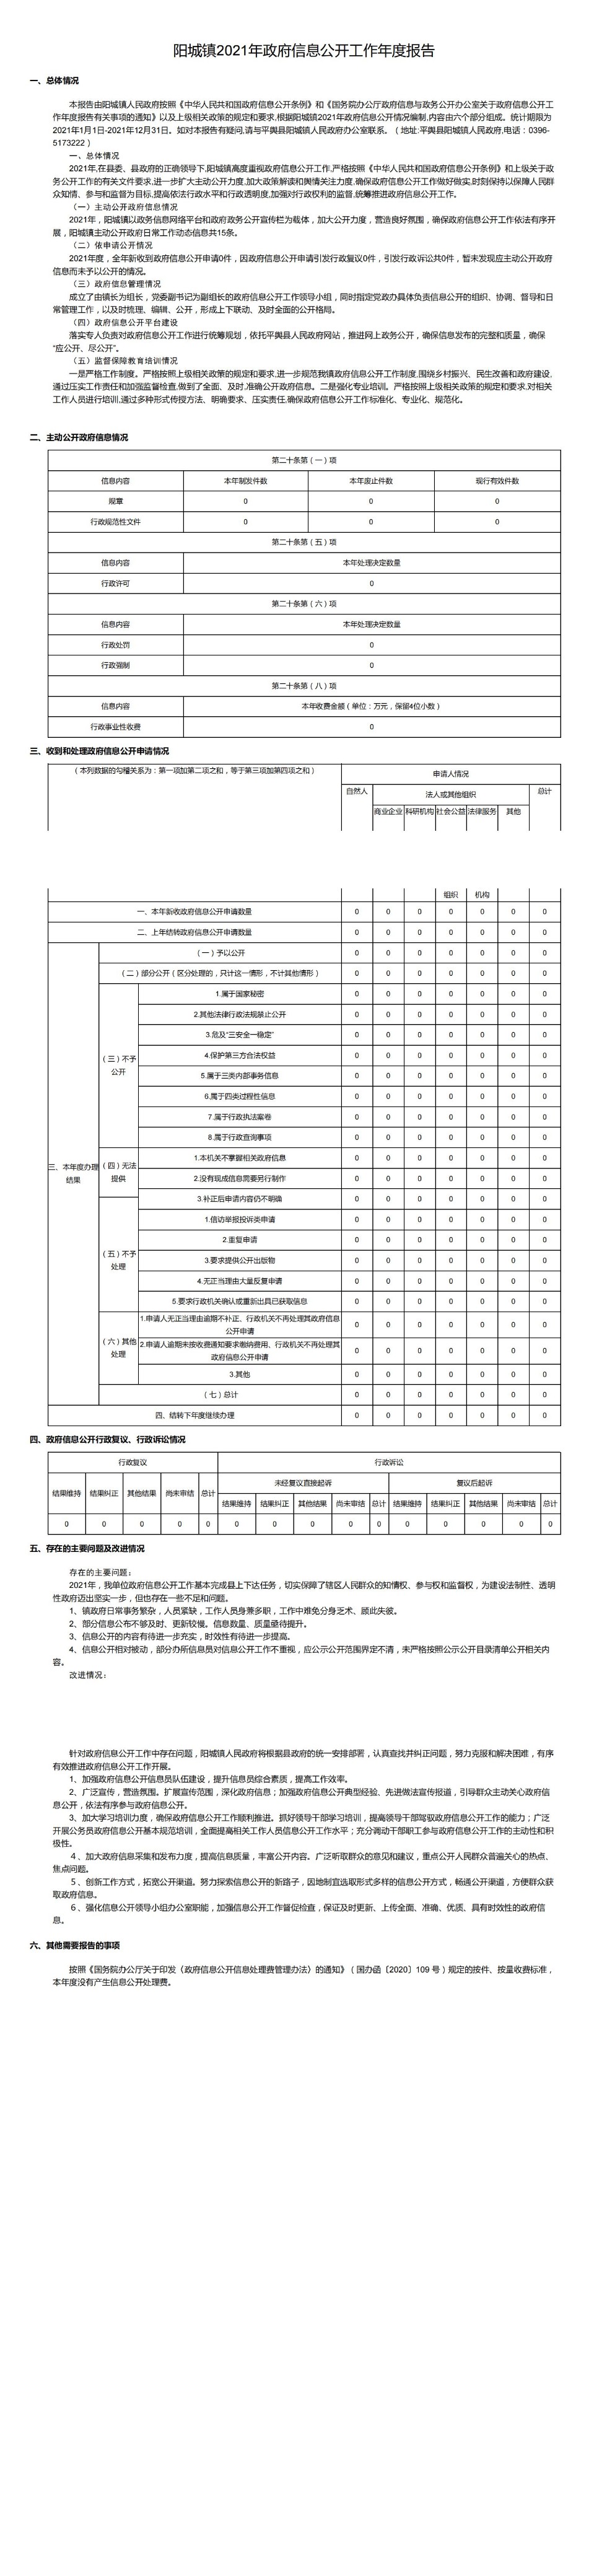 阳城镇2021年政府信息公开工作年度报告_00.jpg